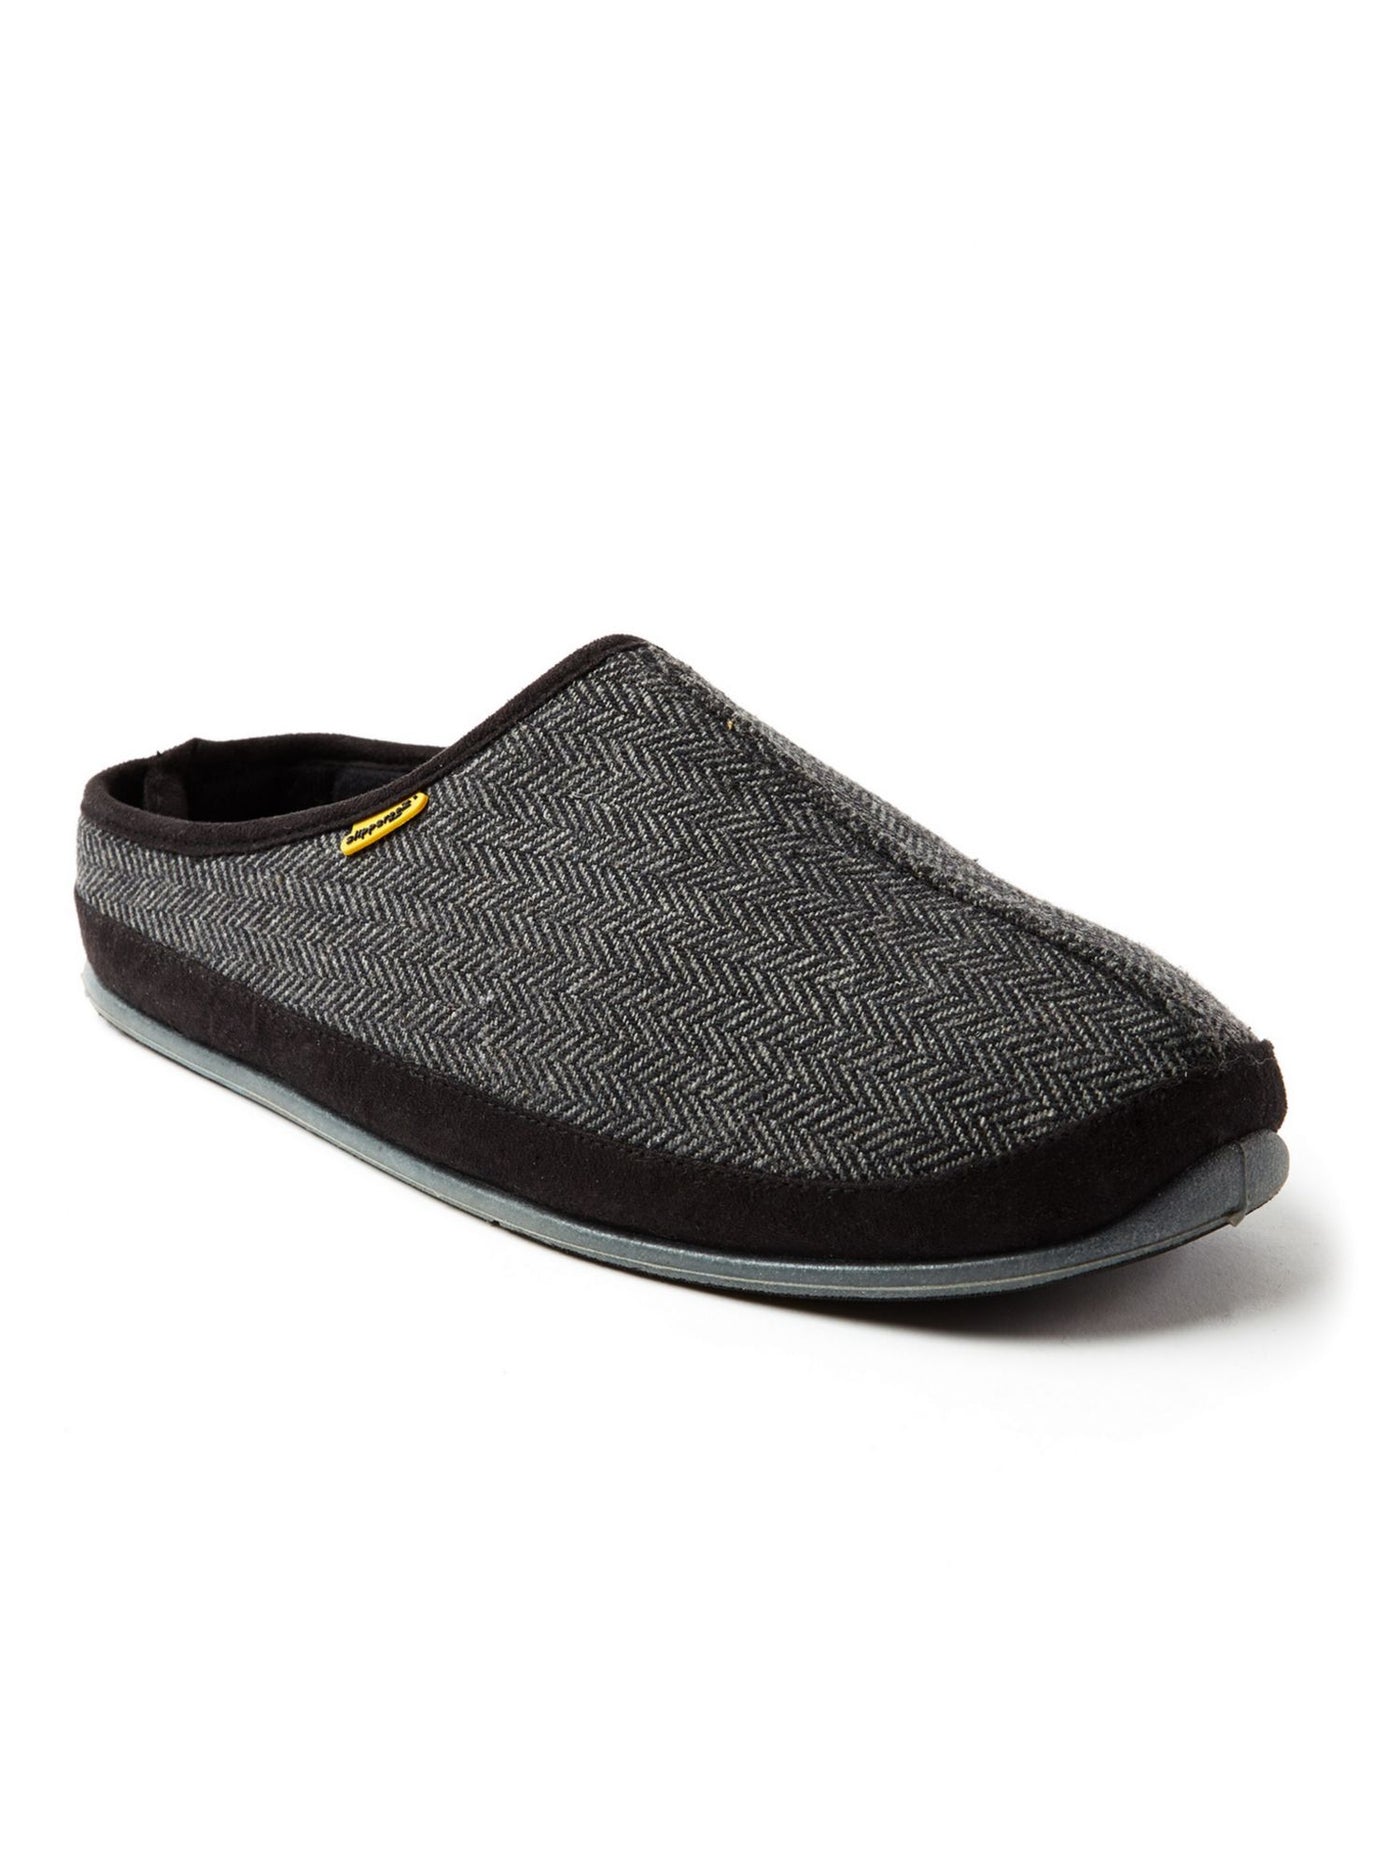 DEER STAGS SLIPPEROOZ Mens Black Herringbone Padded Comfort Wherever Round Toe Platform Slip On Slippers Shoes 12 M